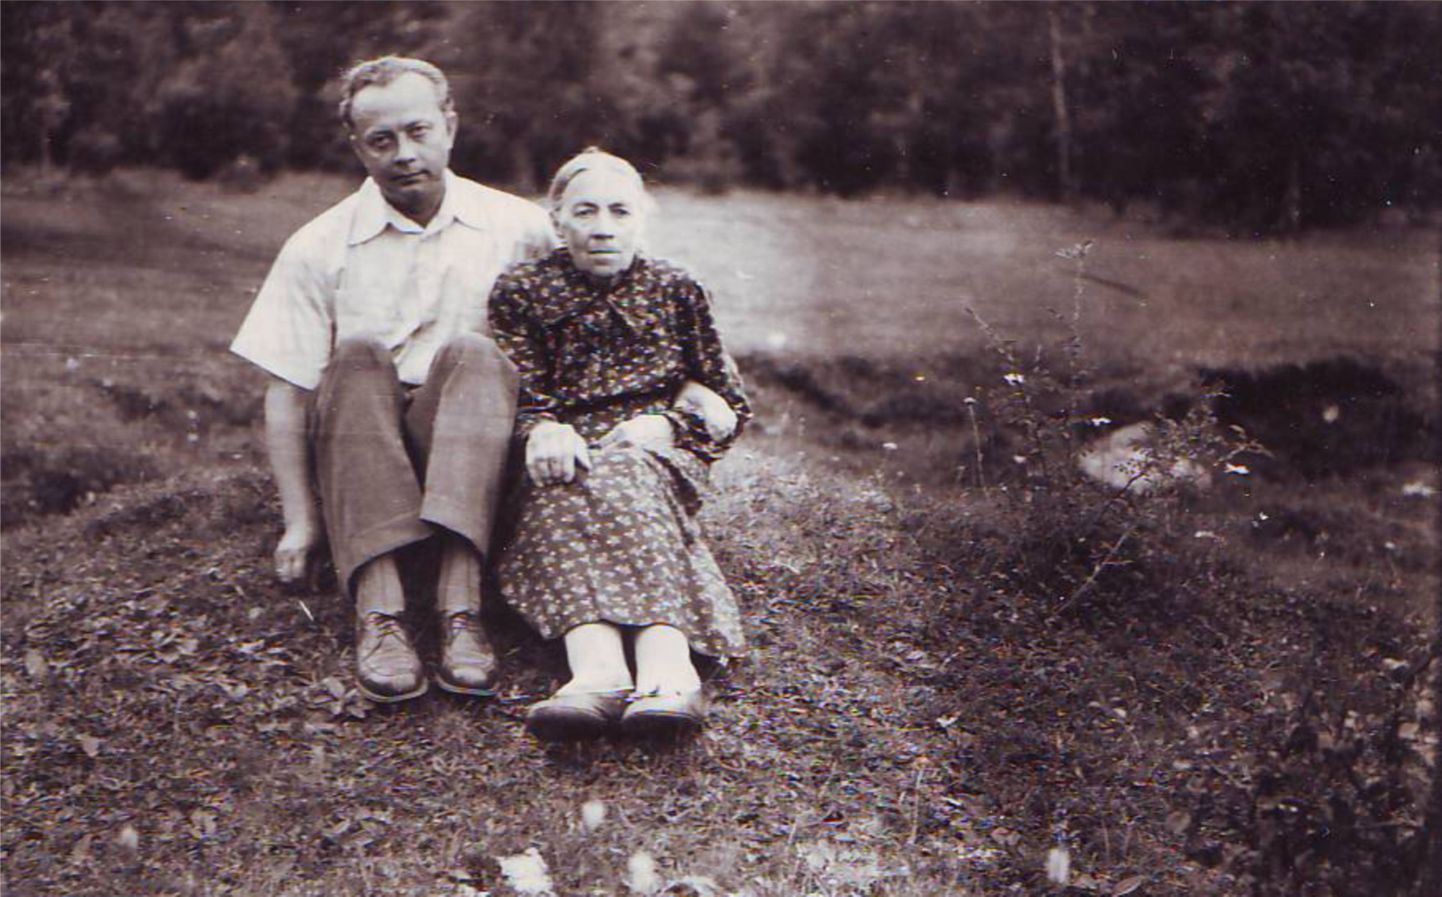 EMAGA: 1956. aastal Reinas tehtud fotol on noor Juhan oma ema Jelisaveta Peegliga (sünd Torn). Kui siin maailmas on midagi reaalselt püha ja õiget, siis on see ainult EMA, kirjutas Juhan sõjaajal oma märkmikku.